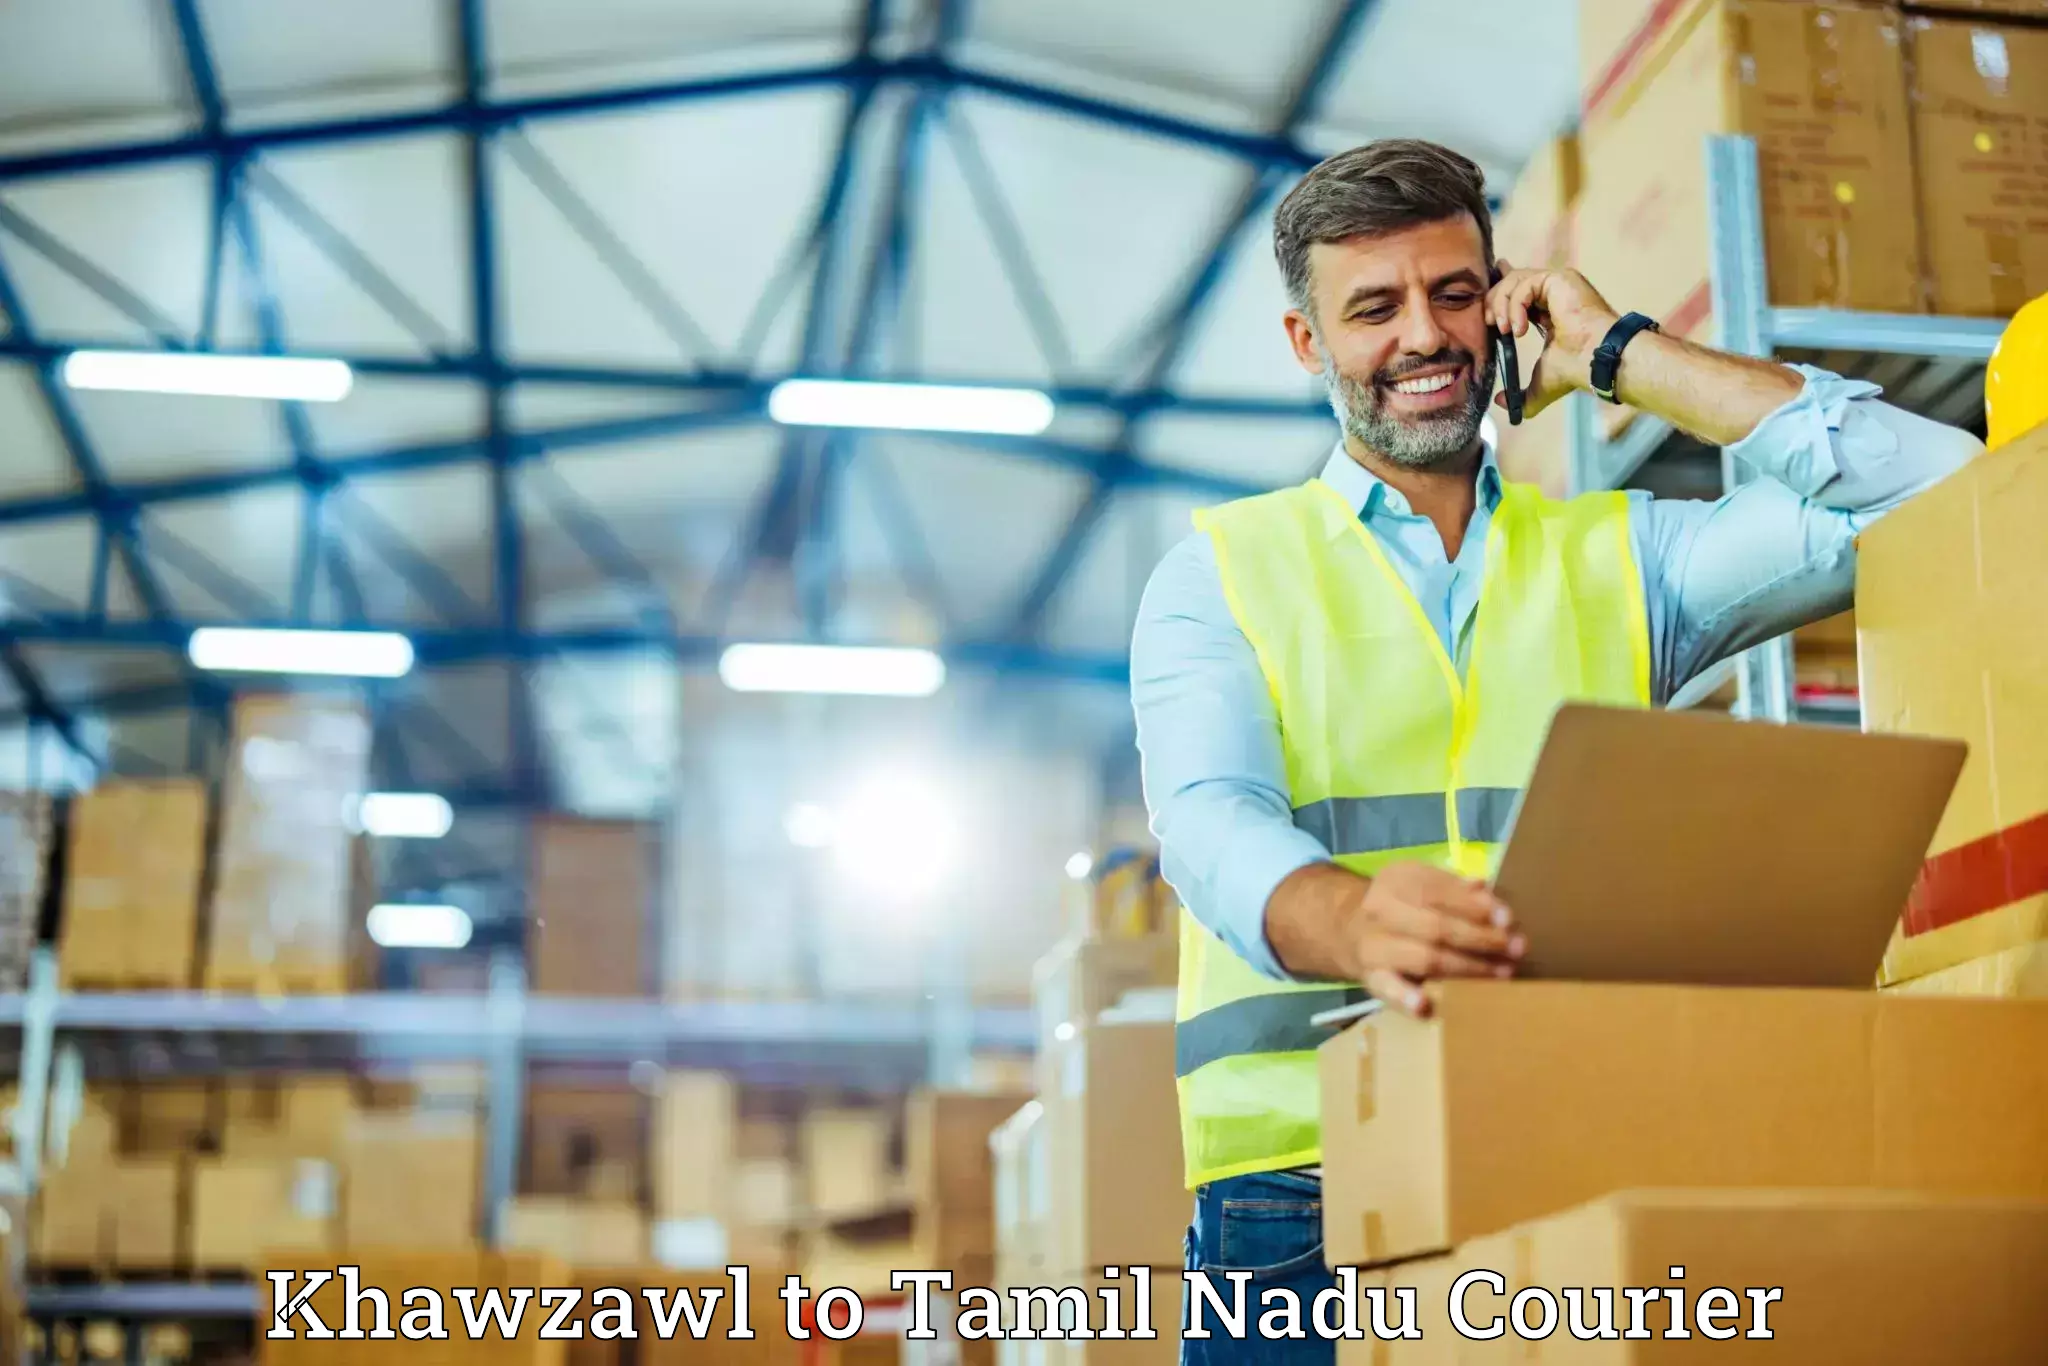 Professional furniture movers Khawzawl to Tamil Nadu